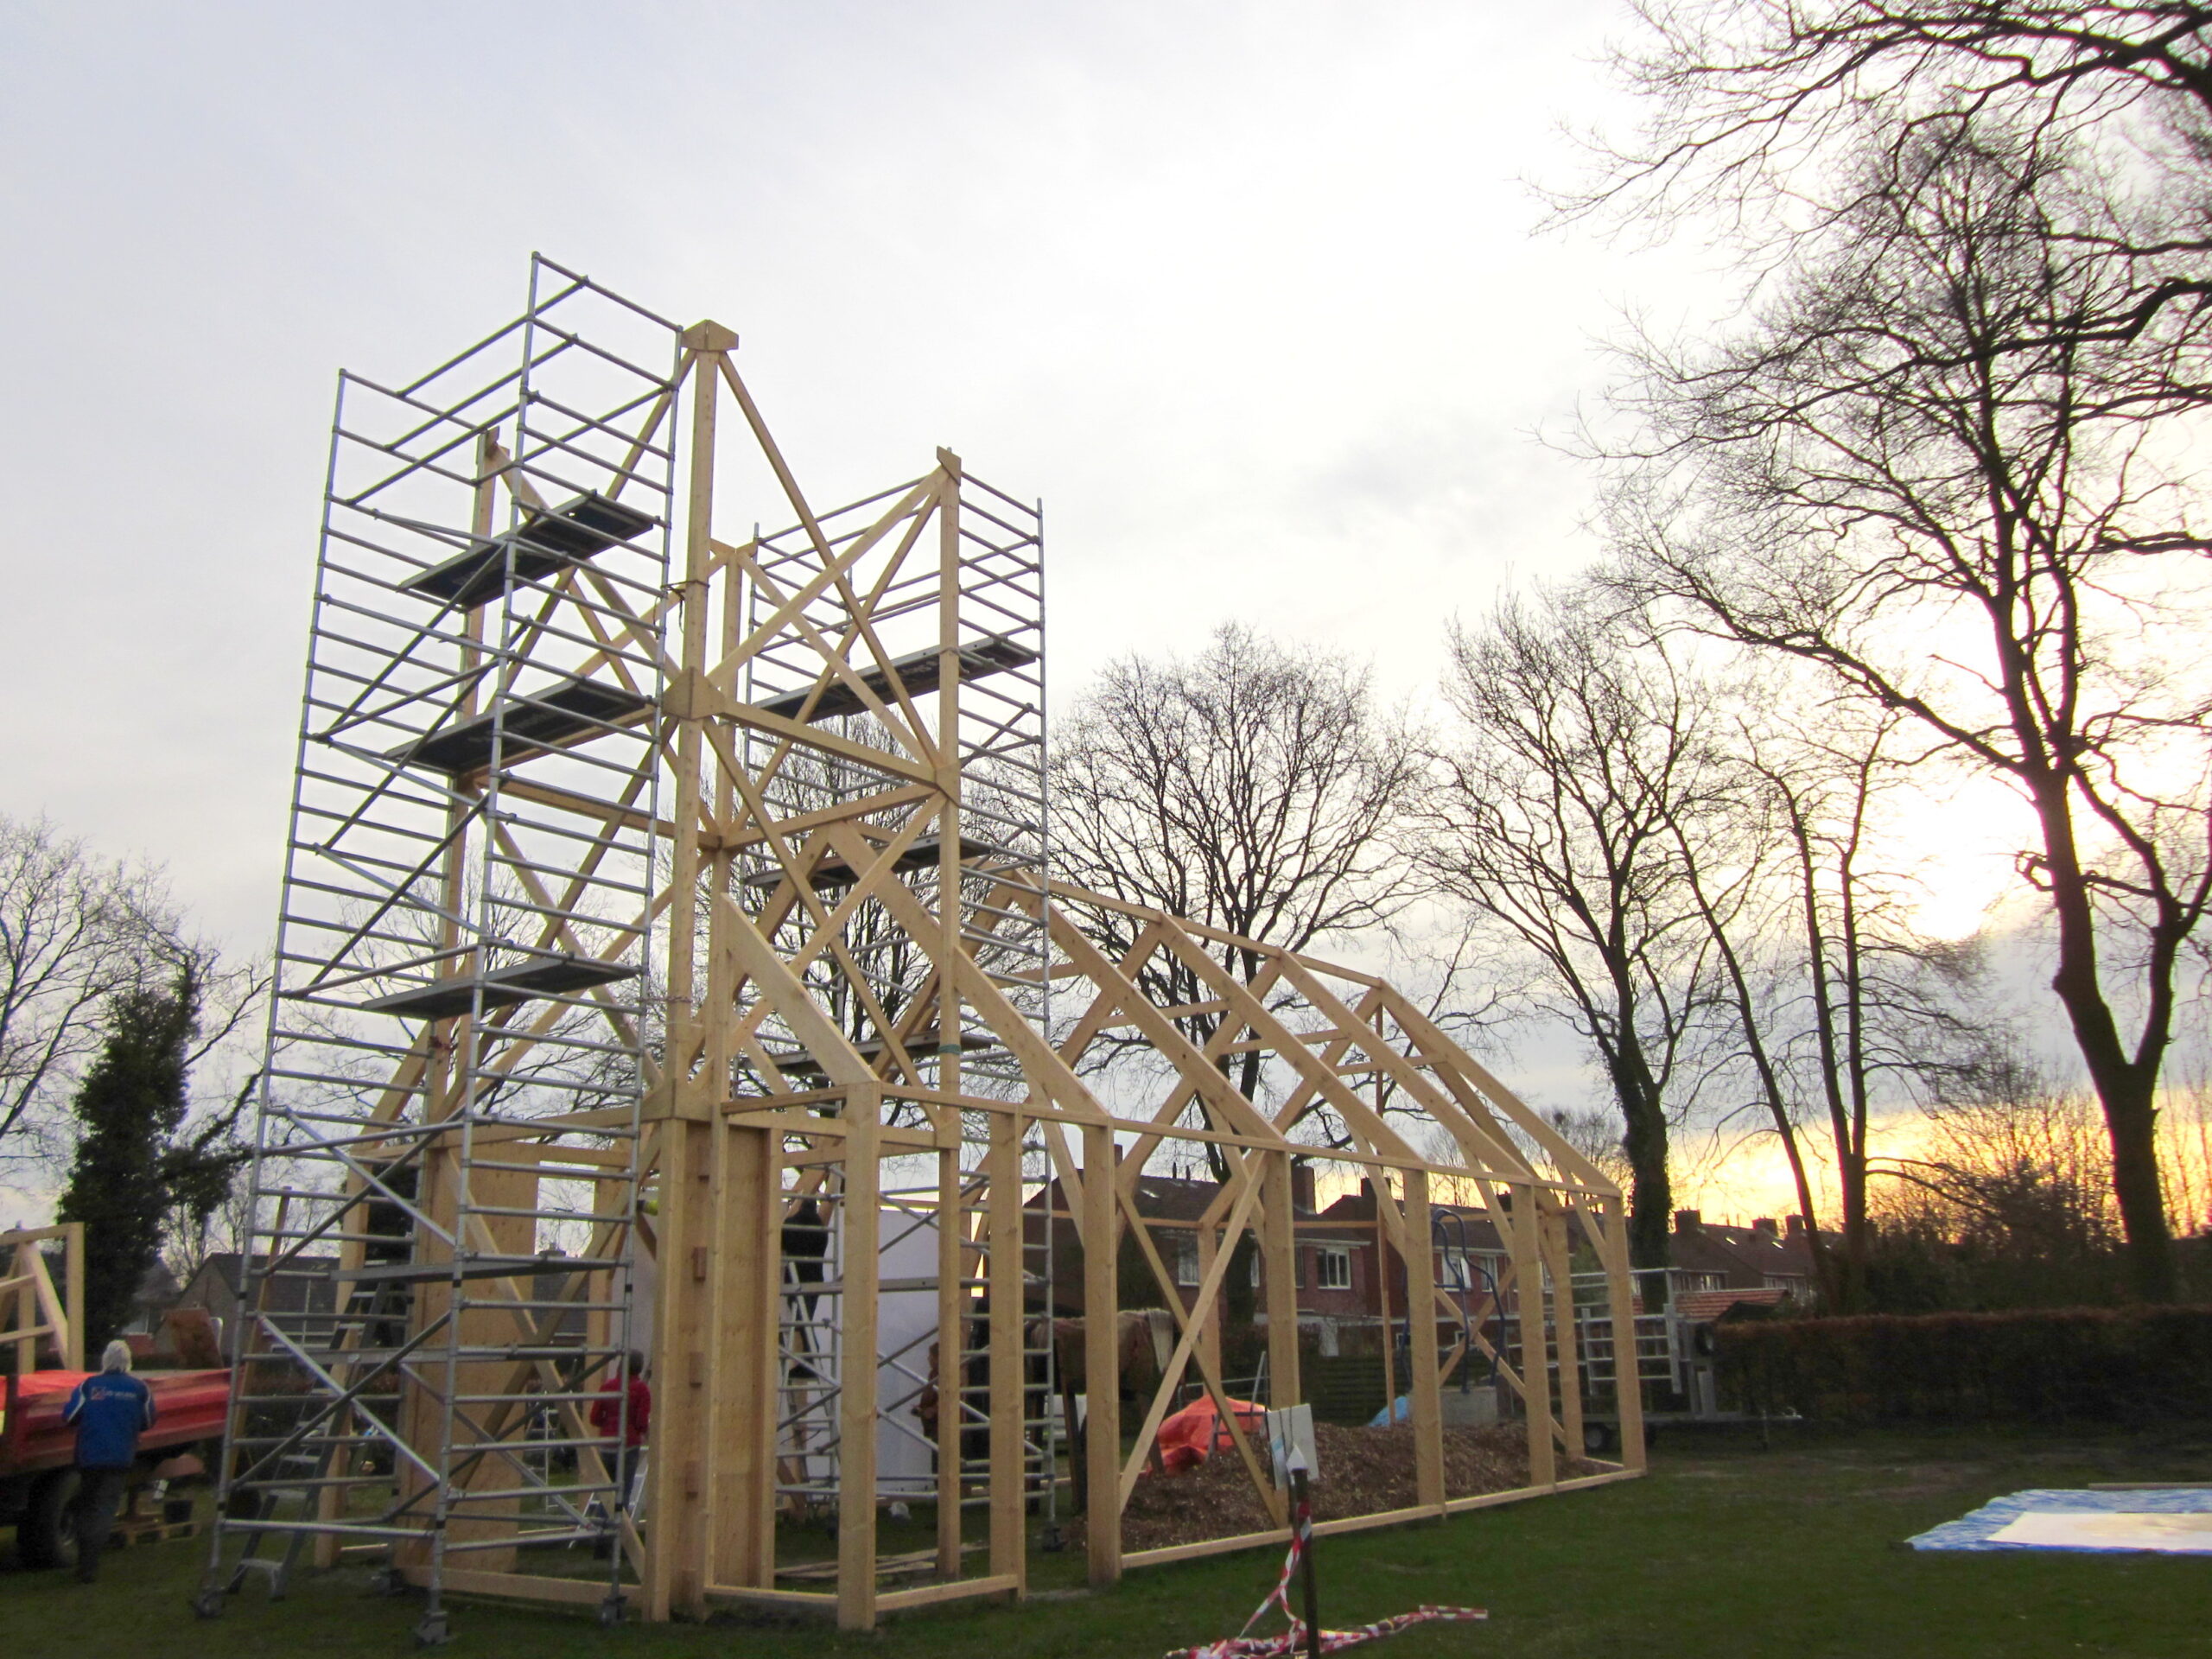 Haren in de Wind replicakerk, opbouw Haren-in-de-Wind-kunstproject, beeldende-kunst-lf2018, kunstenaar-Wietske-Lycklama-à-Nijeholt, kunstinstallatie openbare ruimte 